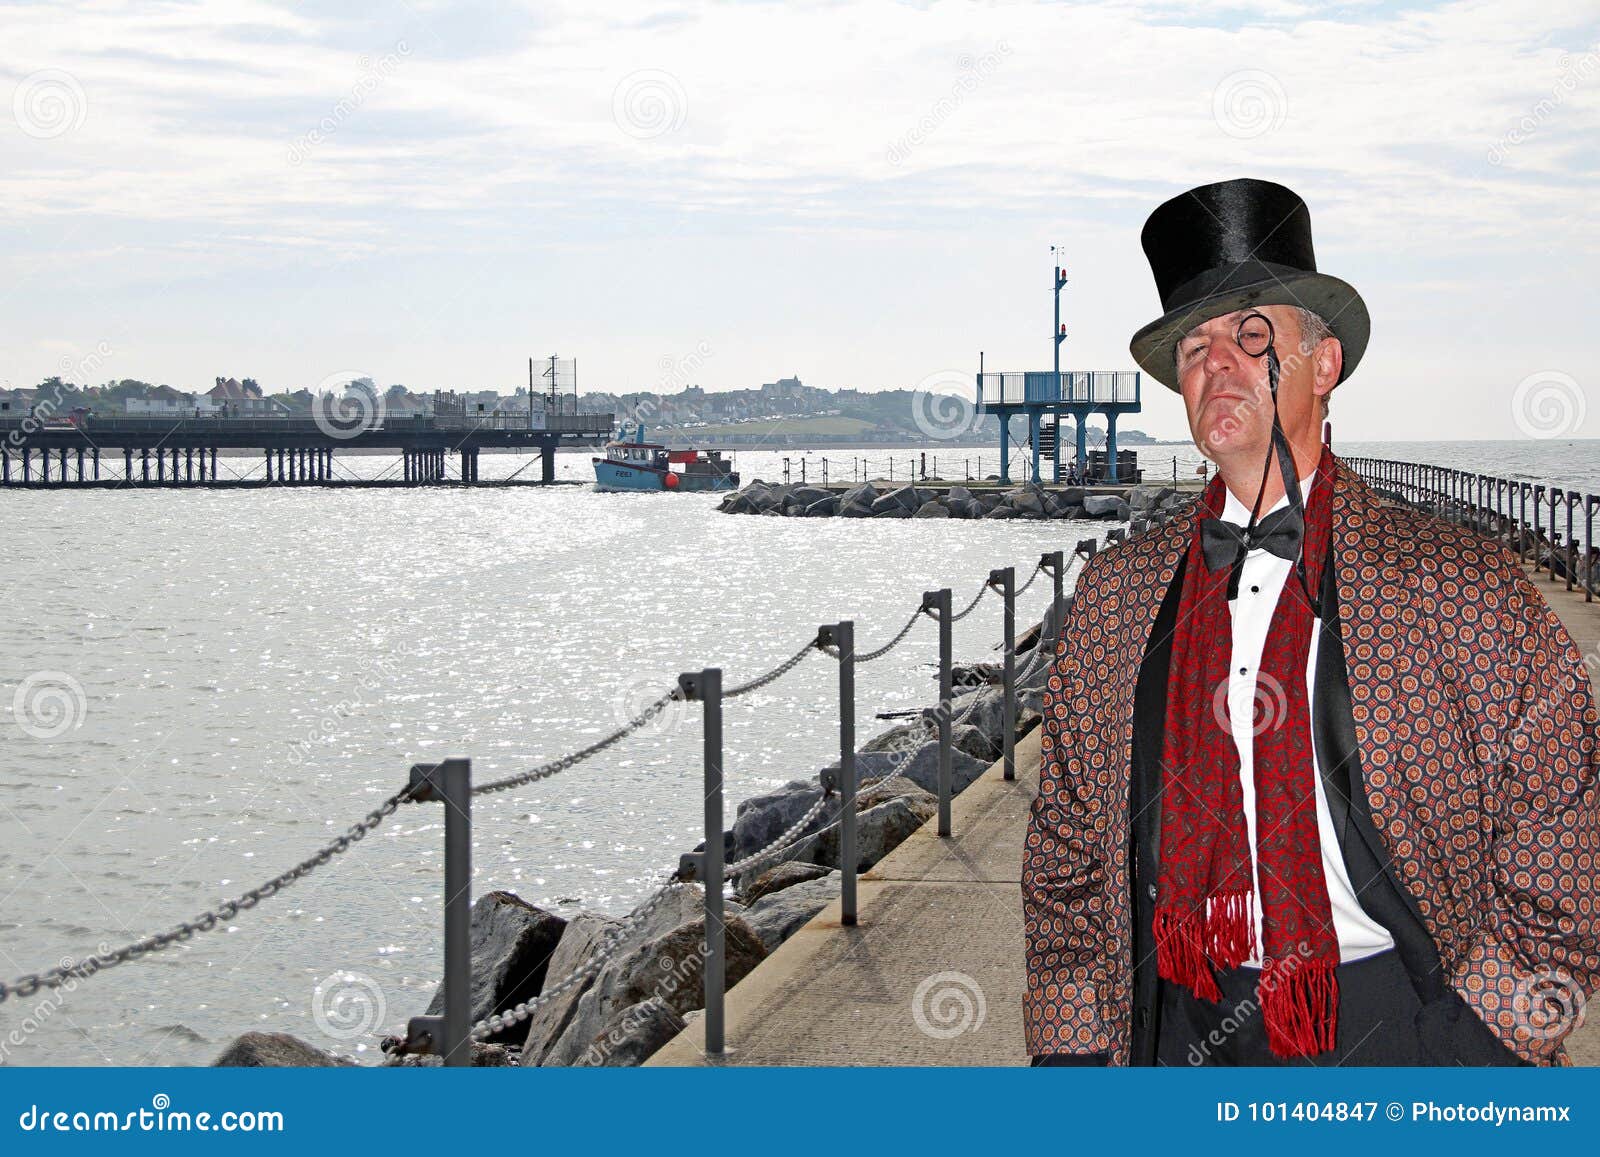 posh city gent on bridge pier neptunes arm herne bay kent top hat